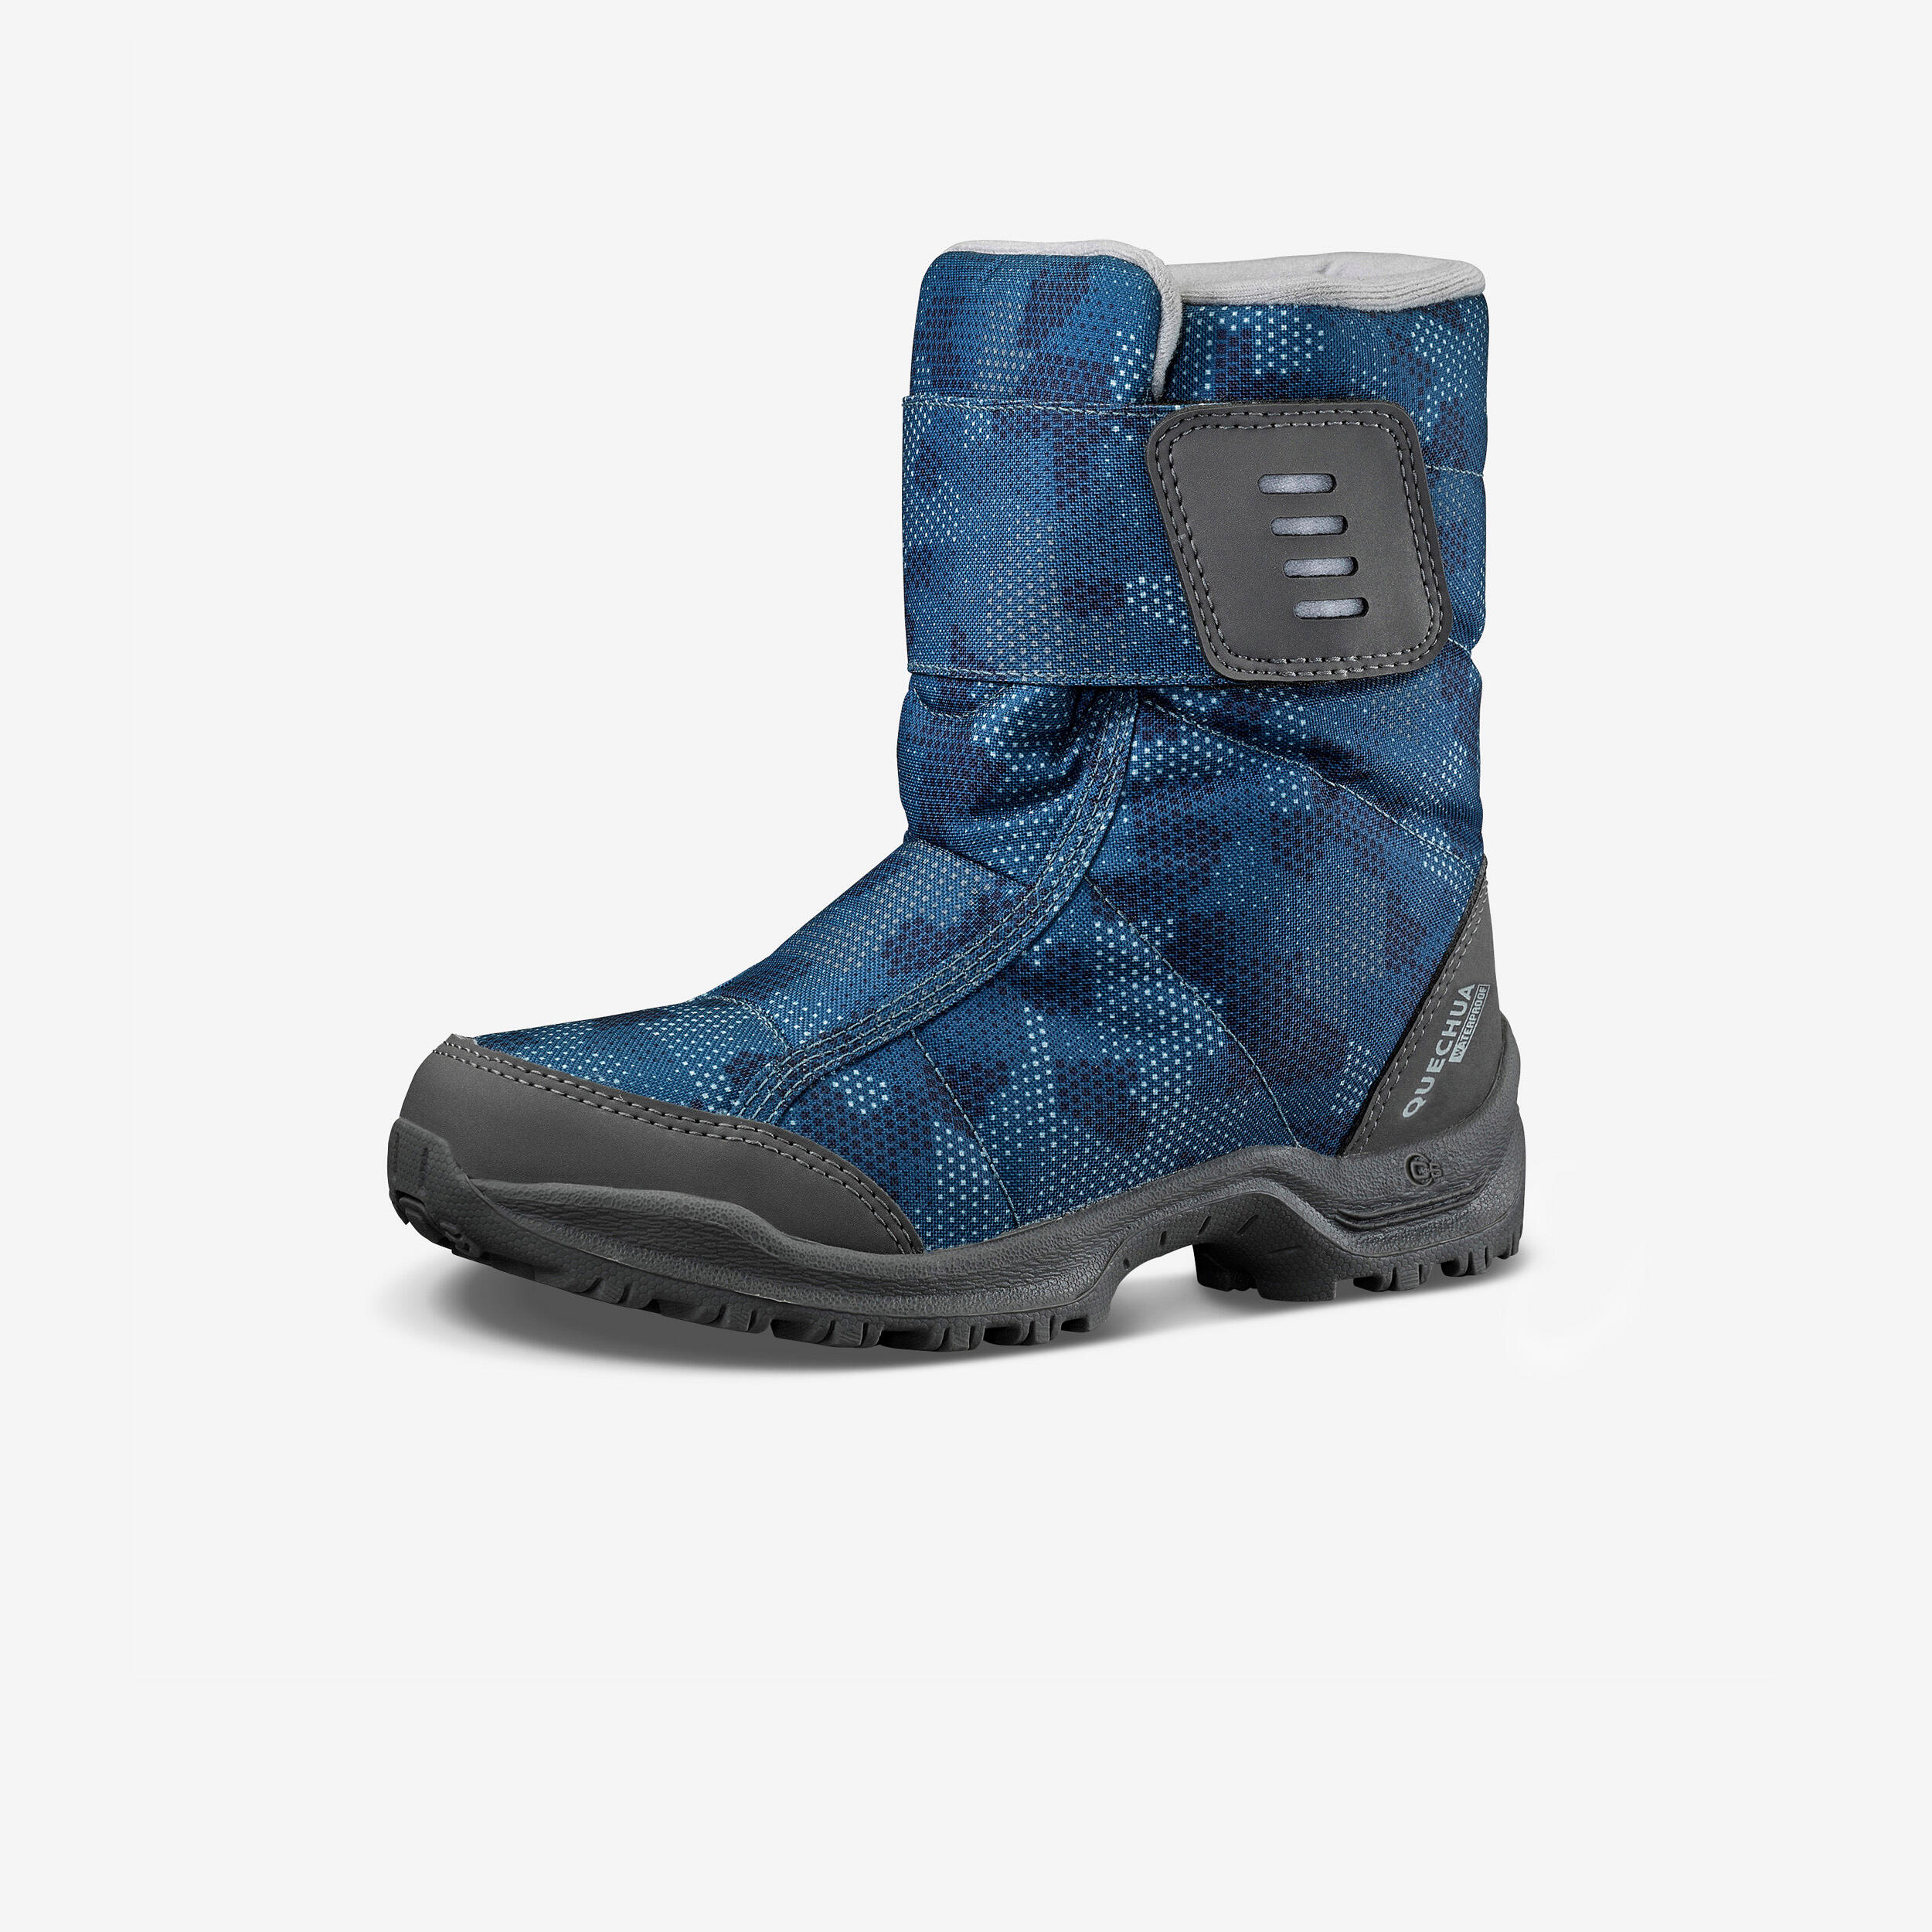 Kids’ Warm Waterproof Snow Hiking Boots SH100 X-Warm Size 7 - 5.5 1/7